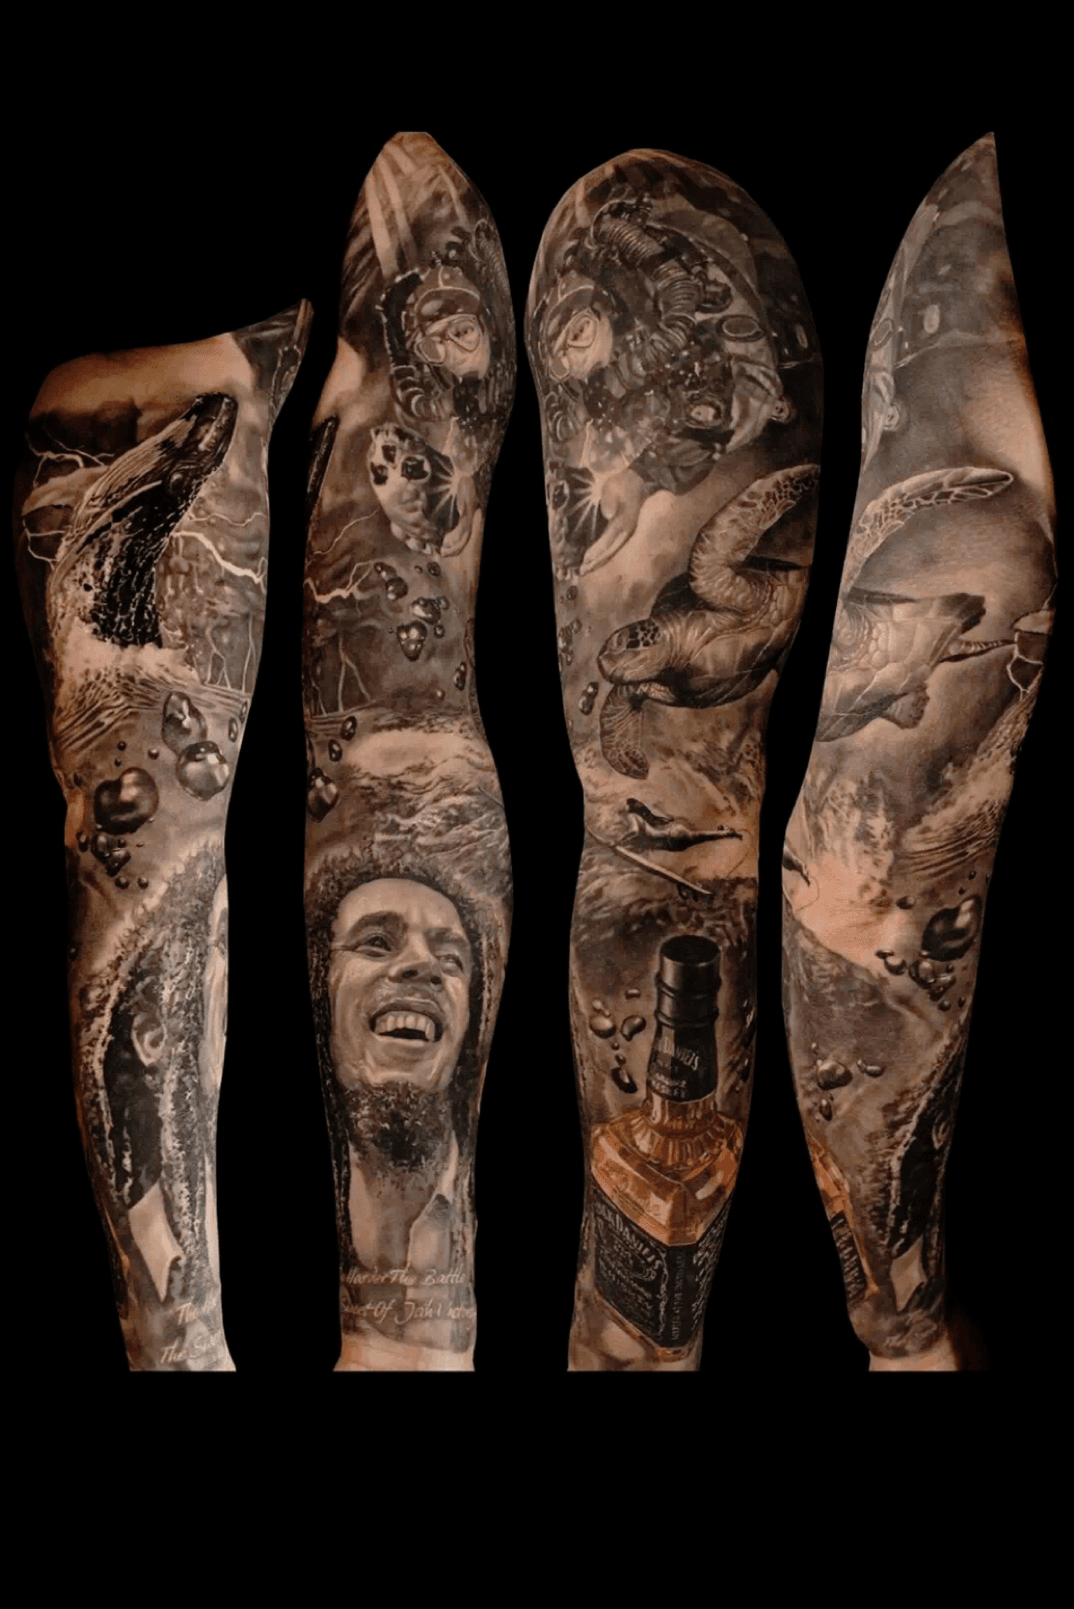 Bob Marley Tattoo by Chelovek on DeviantArt